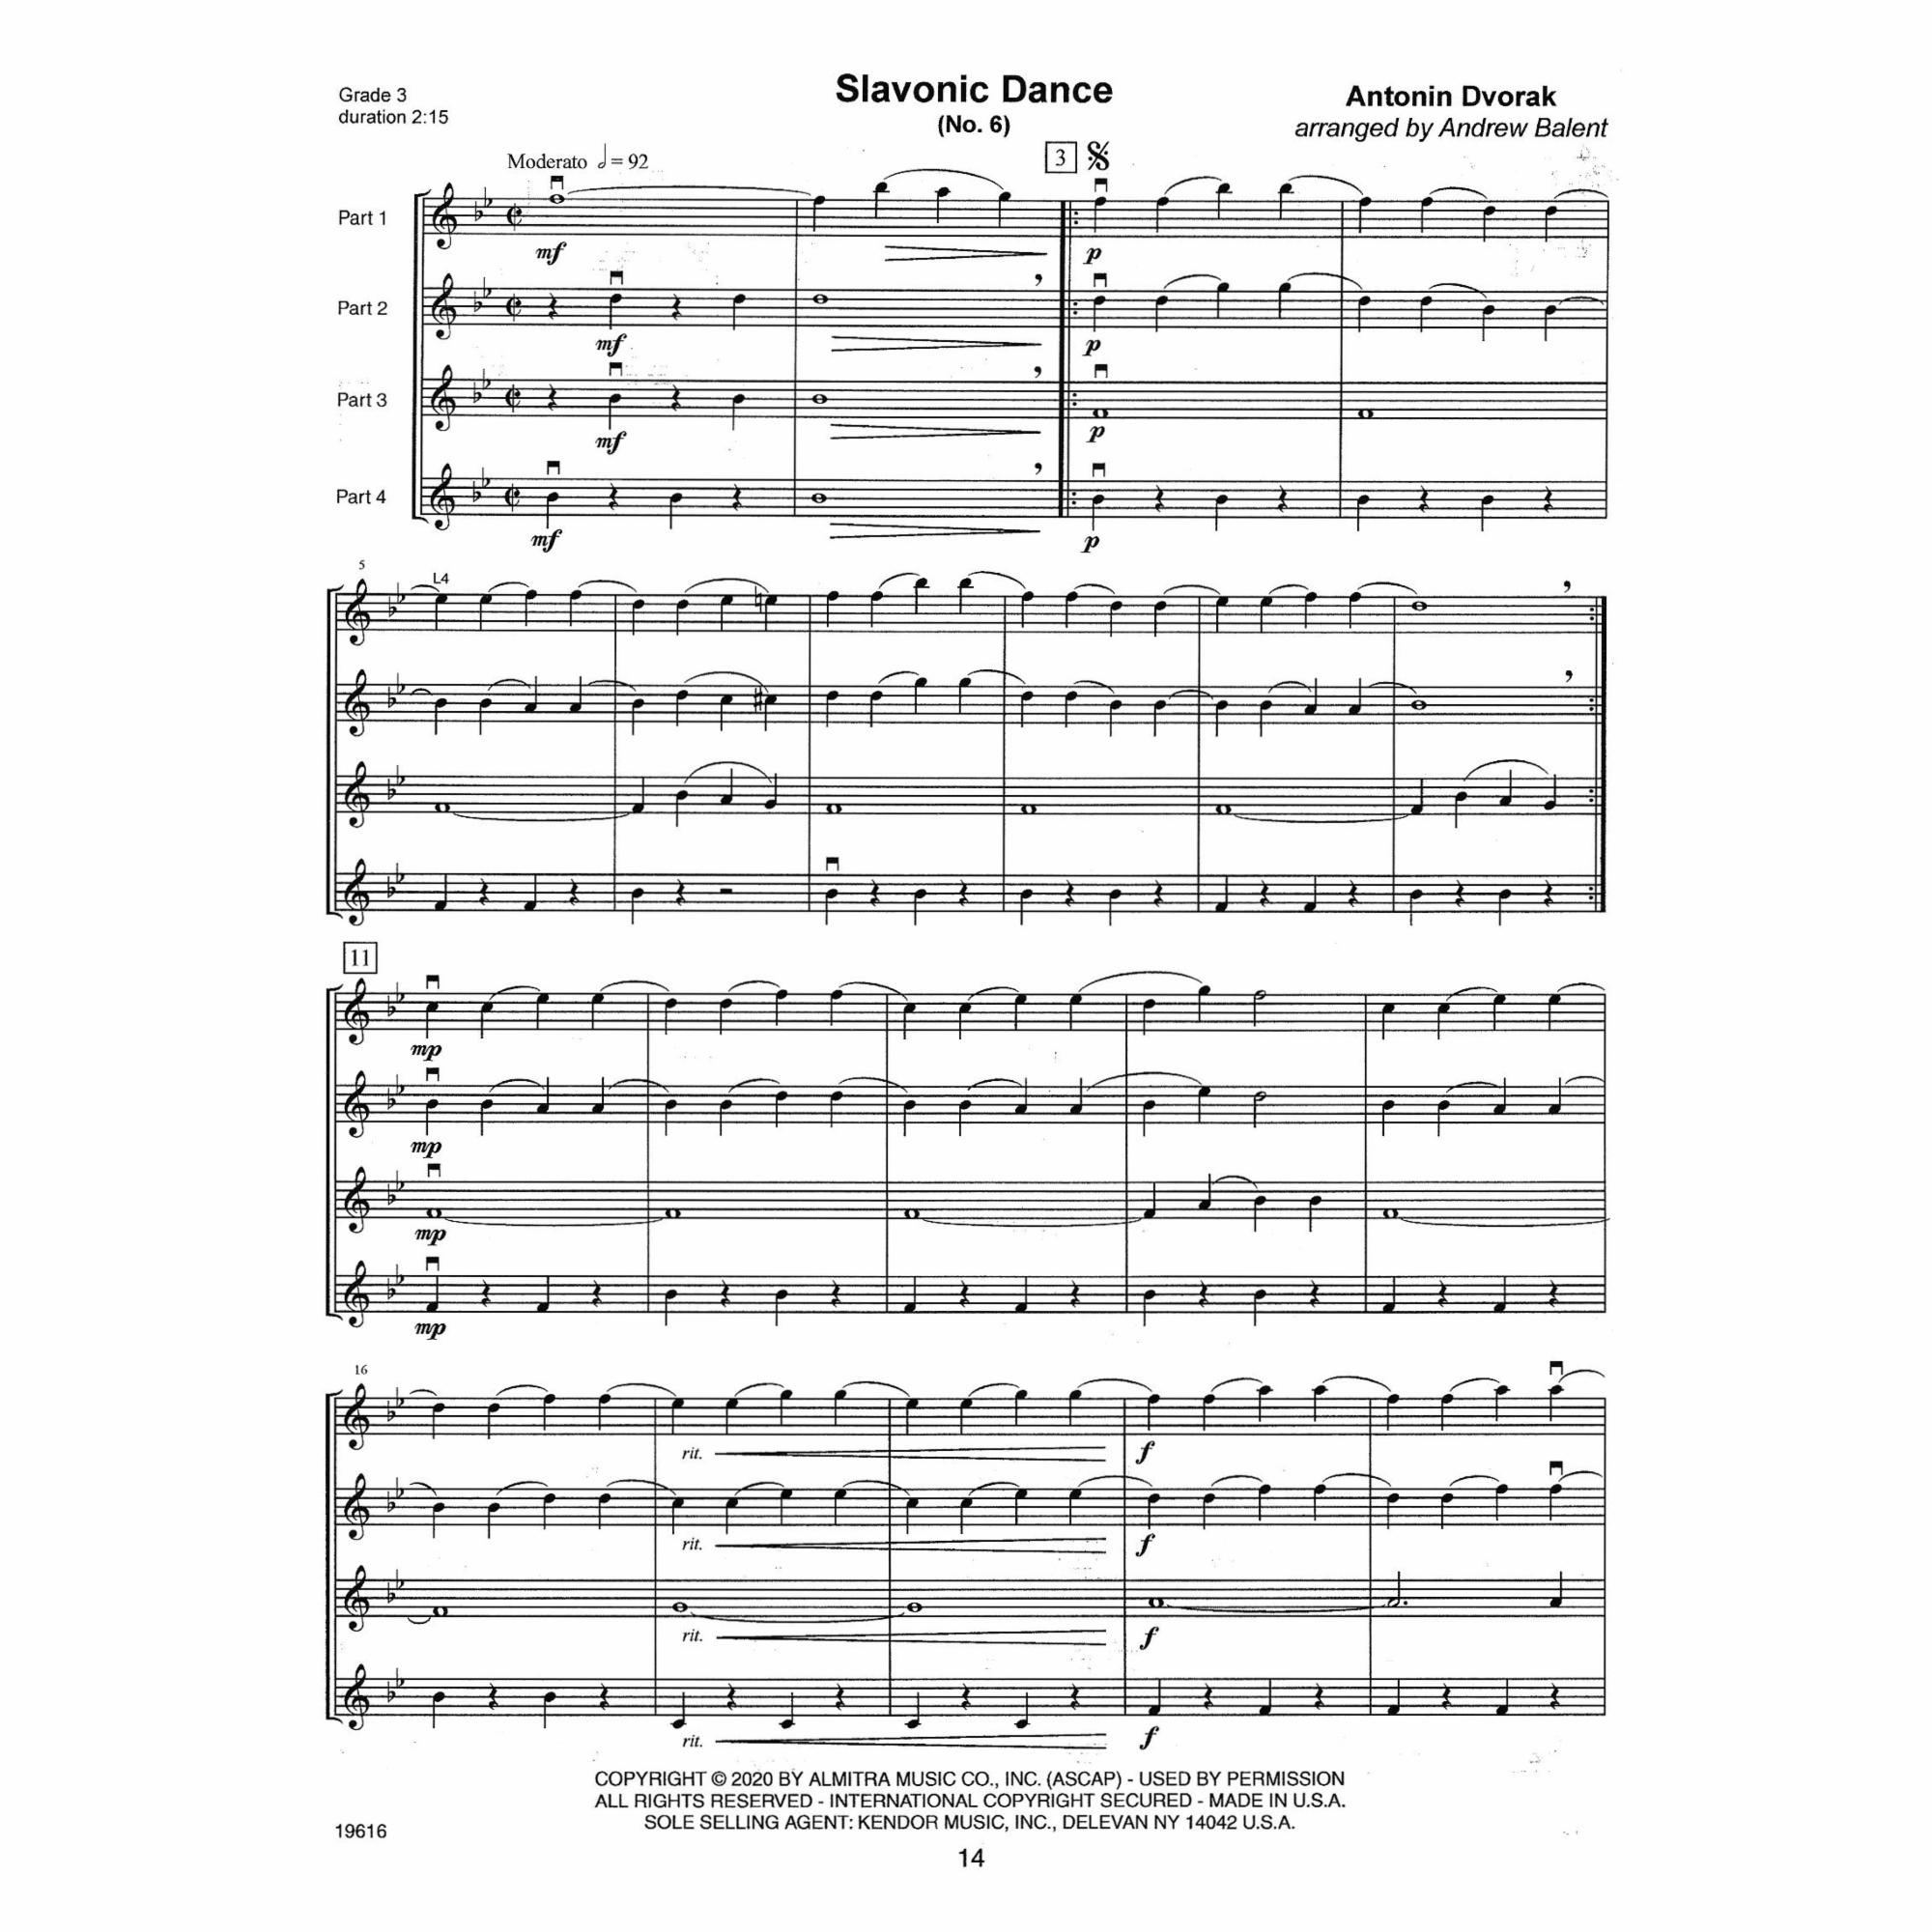 Sample: Four Violins (Pg. 14) 